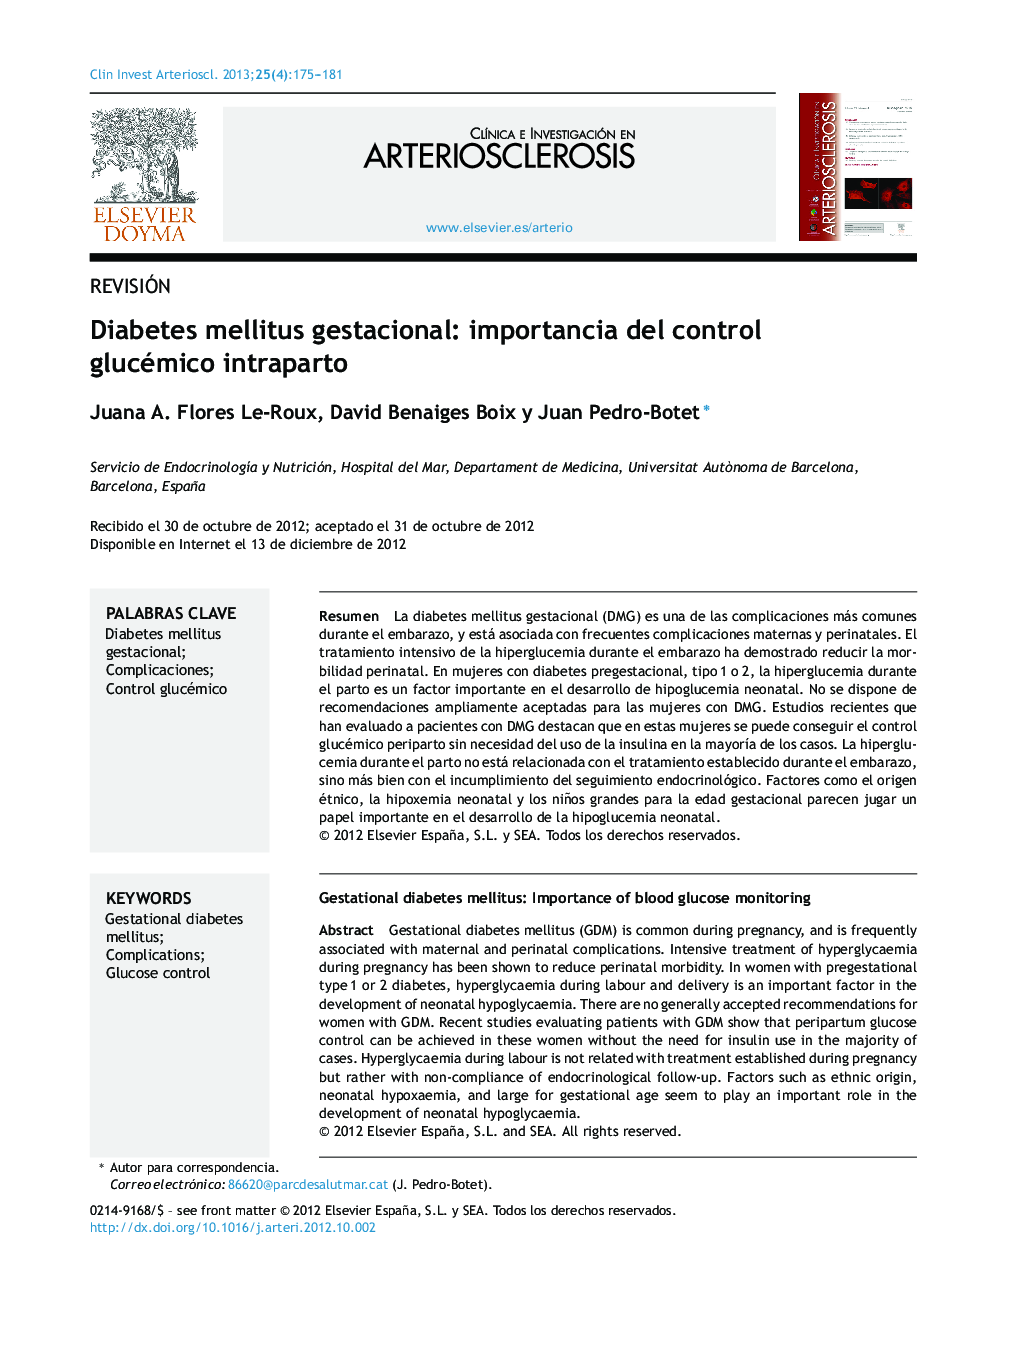 Diabetes mellitus gestacional: importancia del control glucémico intraparto